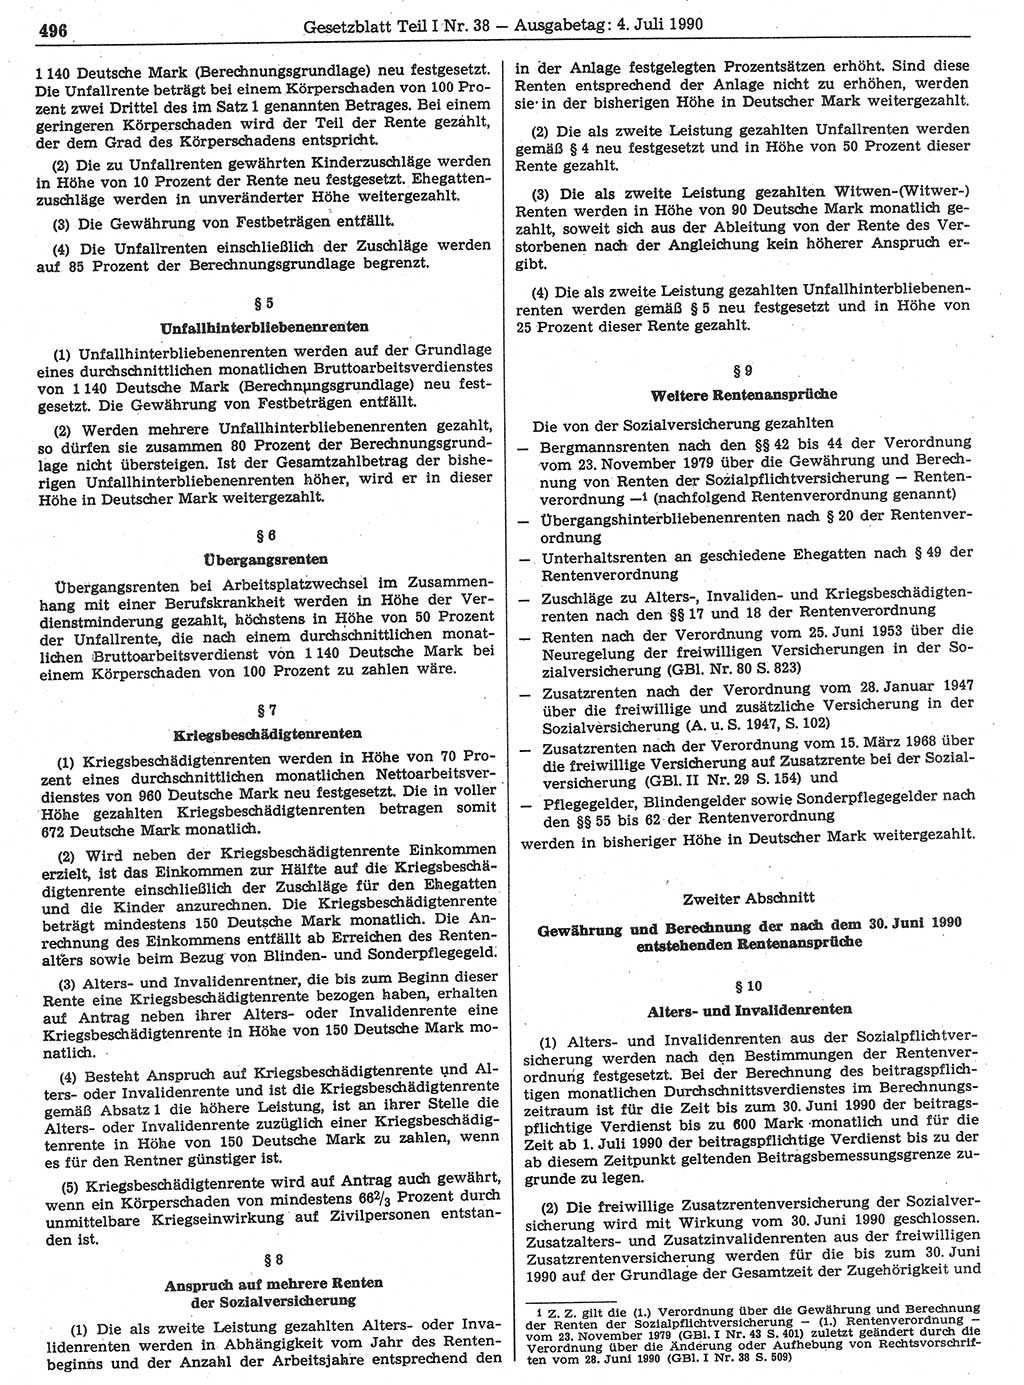 Gesetzblatt (GBl.) der Deutschen Demokratischen Republik (DDR) Teil Ⅰ 1990, Seite 496 (GBl. DDR Ⅰ 1990, S. 496)